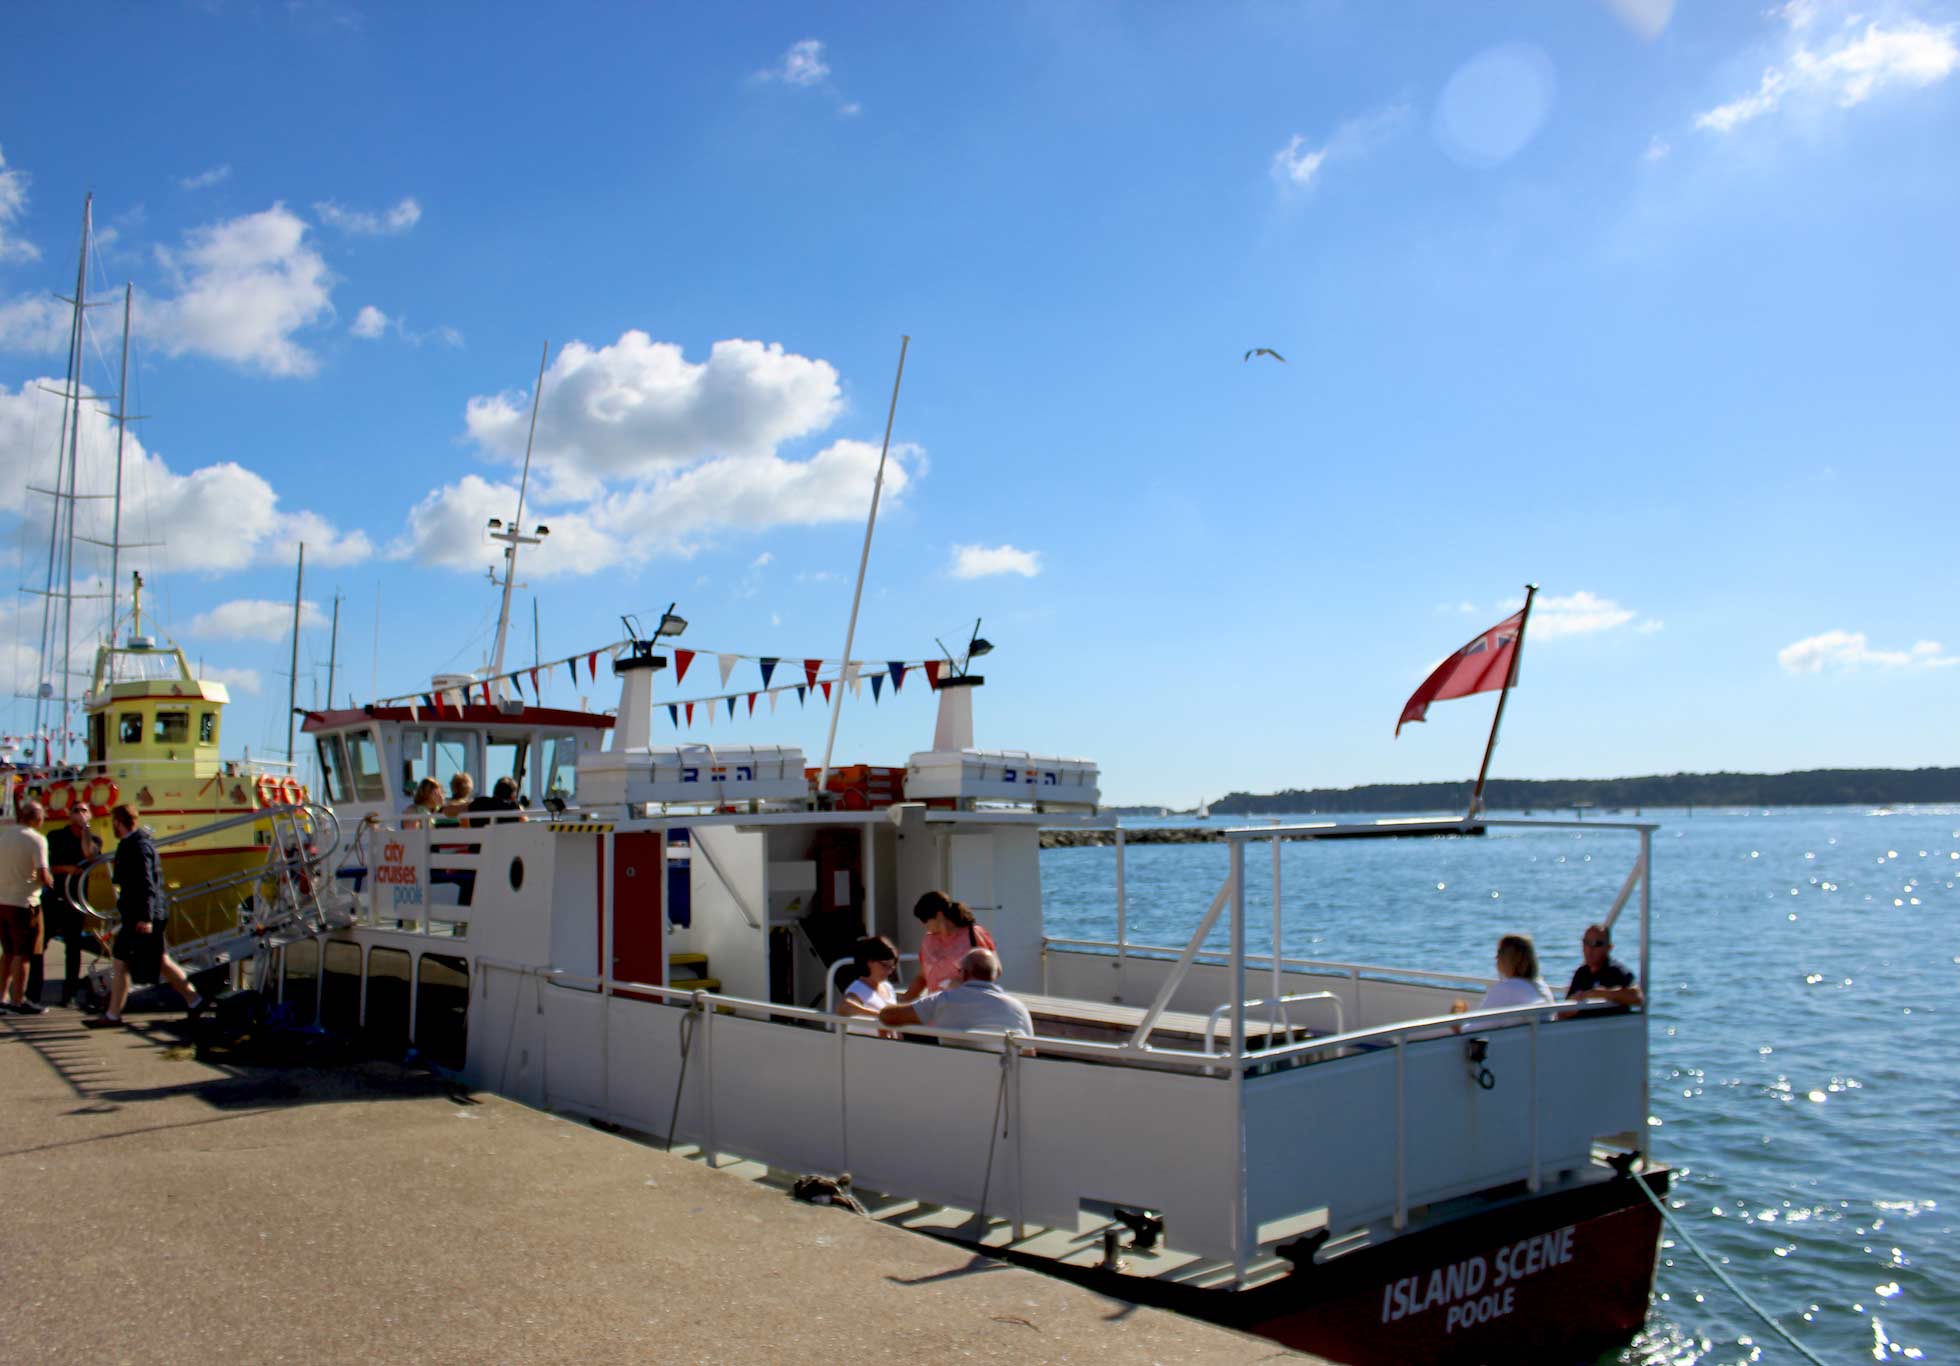 Cảnh đảo Một chiếc thuyền nhỏ cập cảng Poole với những người ngồi trên boong tàu.